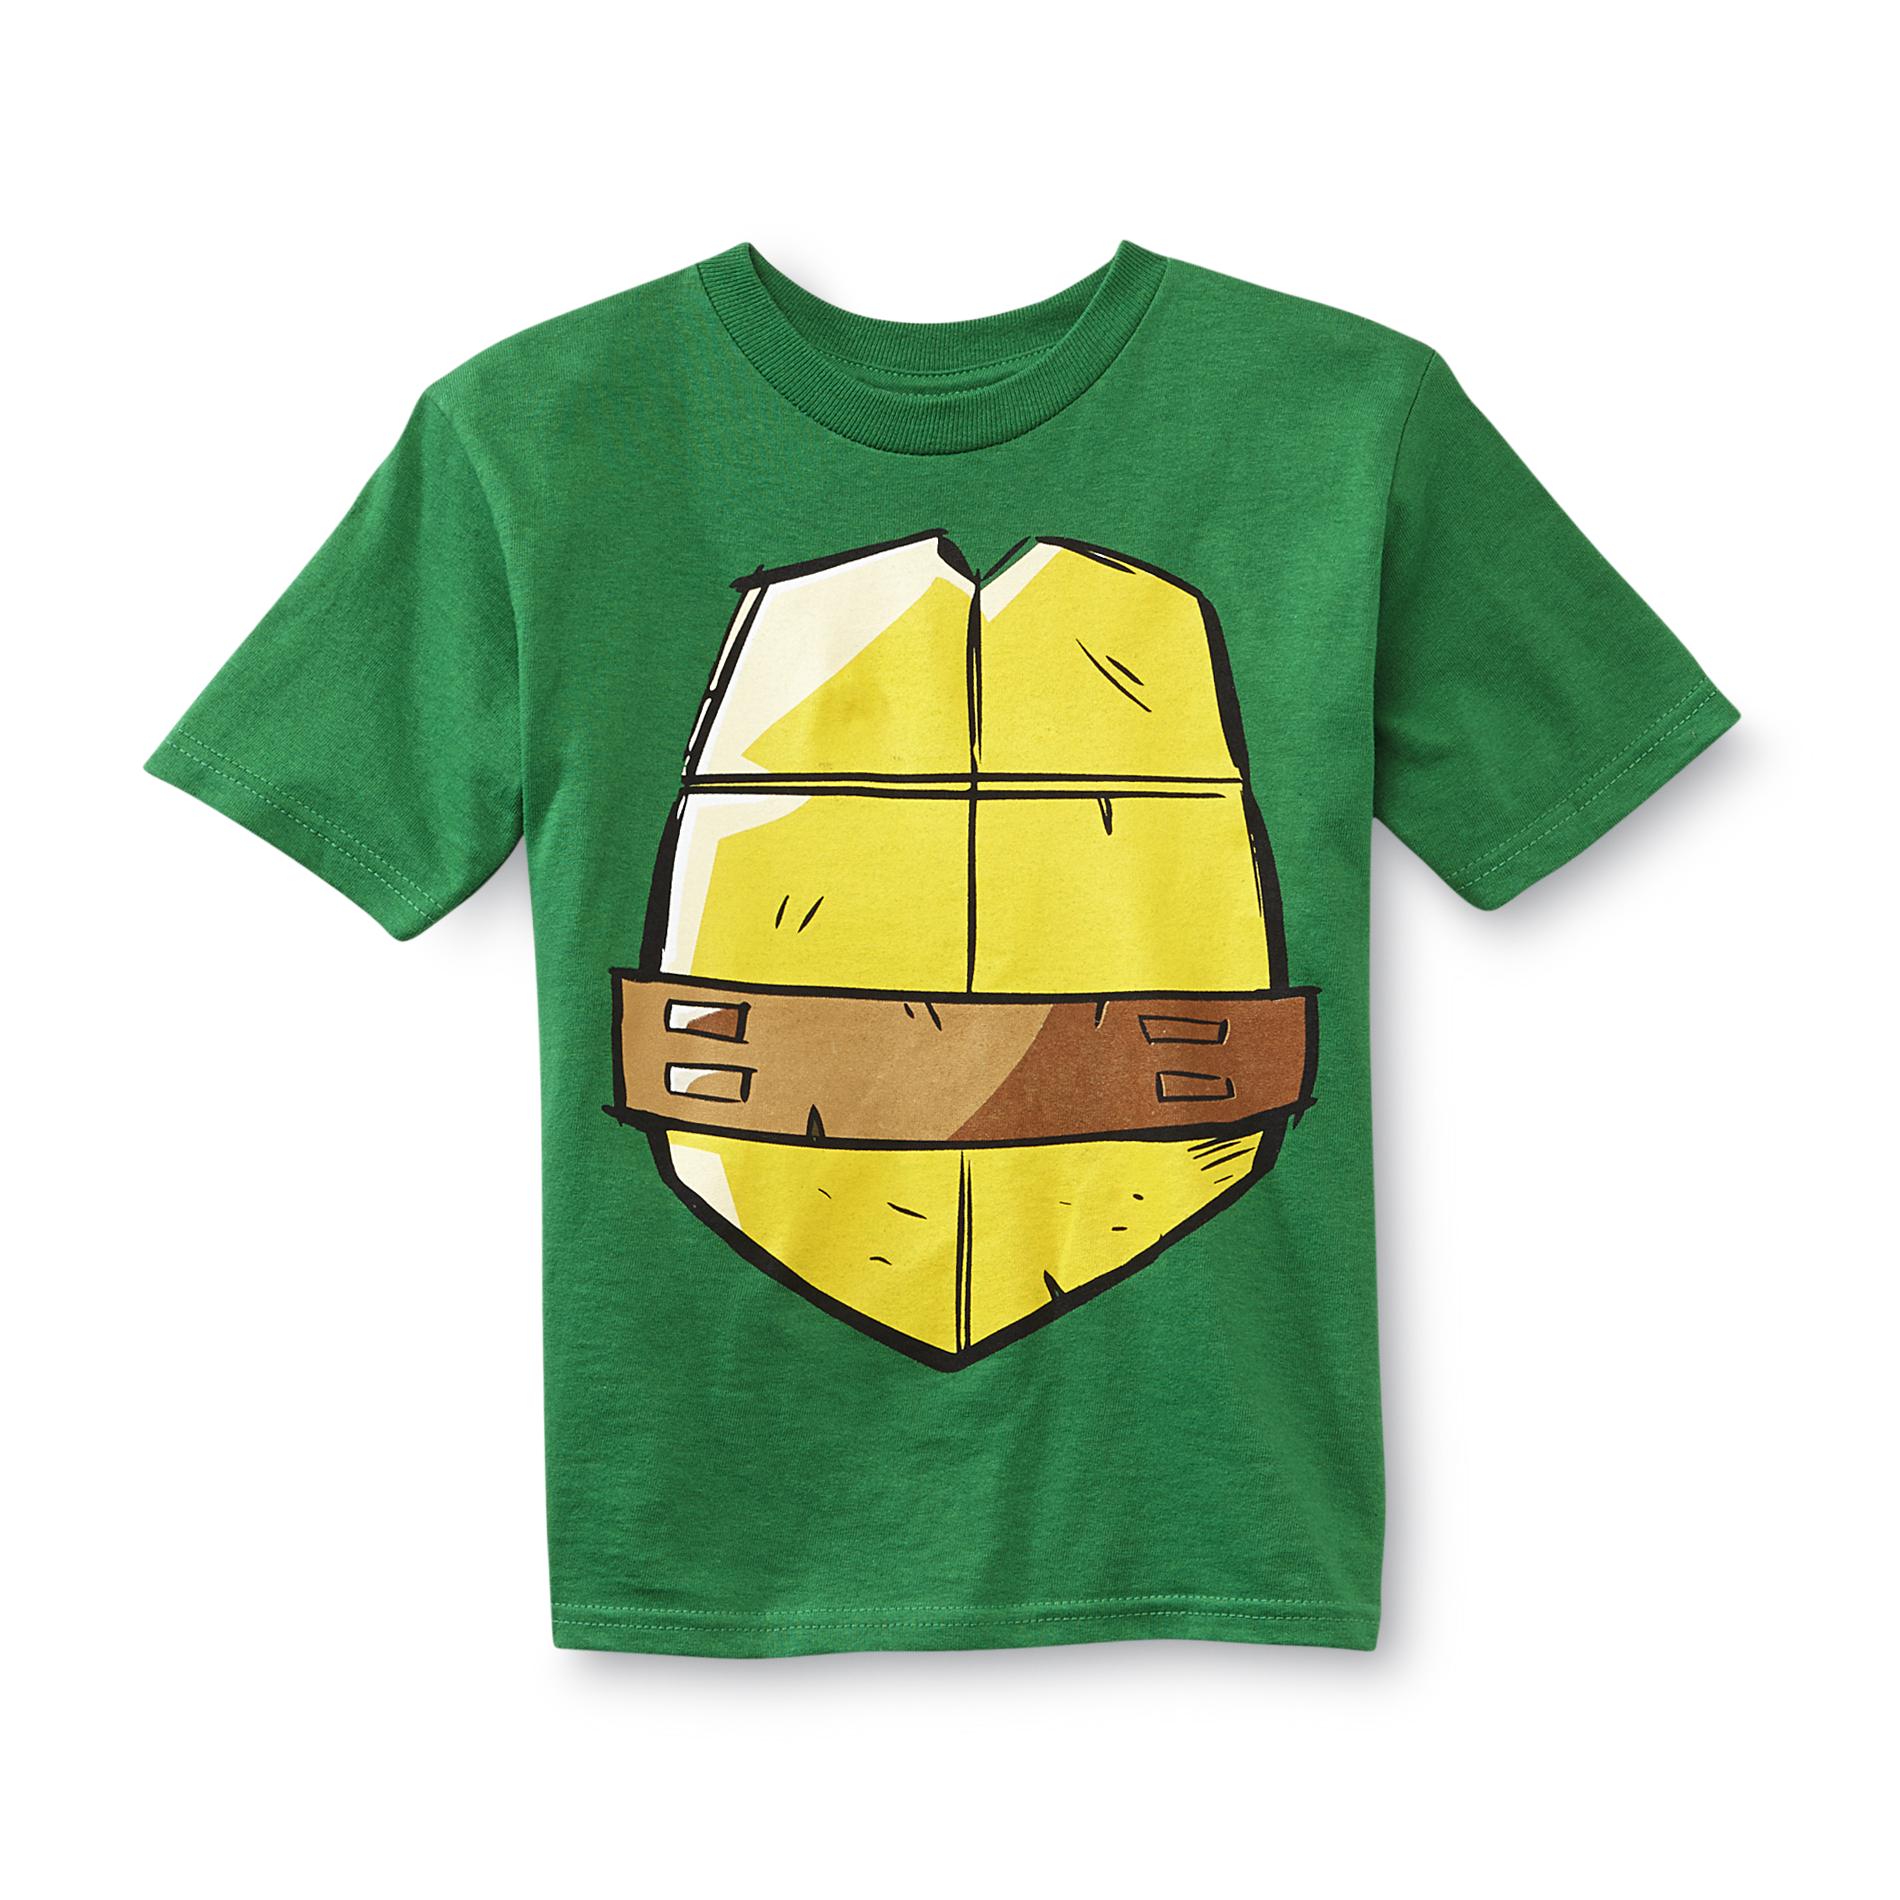 Nickelodeon Boy's Costume T-Shirt - Teenage Mutant Ninja Turtles